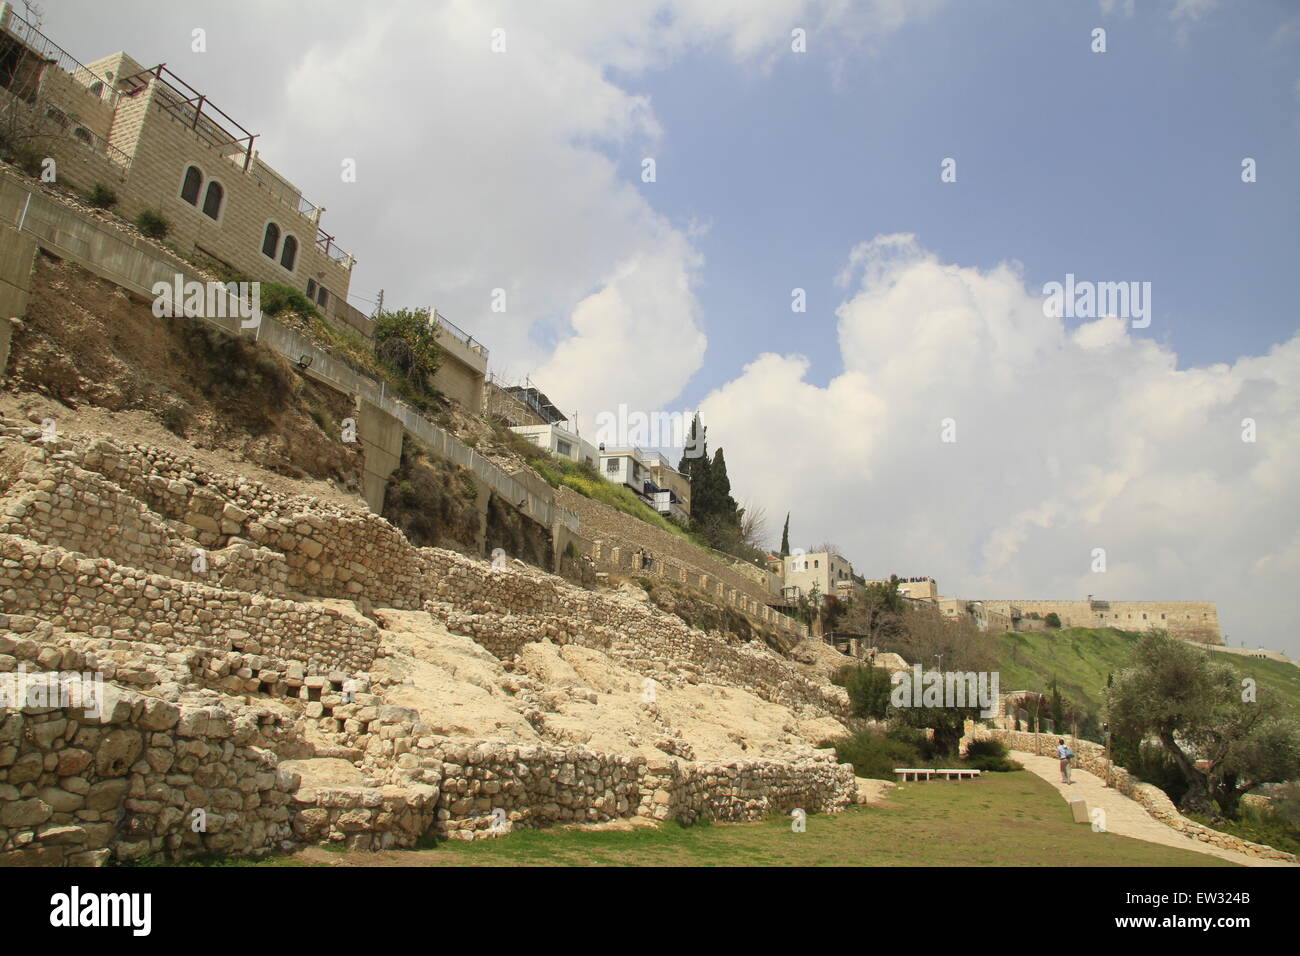 Israël, Jérusalem, la ville de David Parc National dans le quartier de Silwan, mont du Temple est à l'arrière-plan Banque D'Images